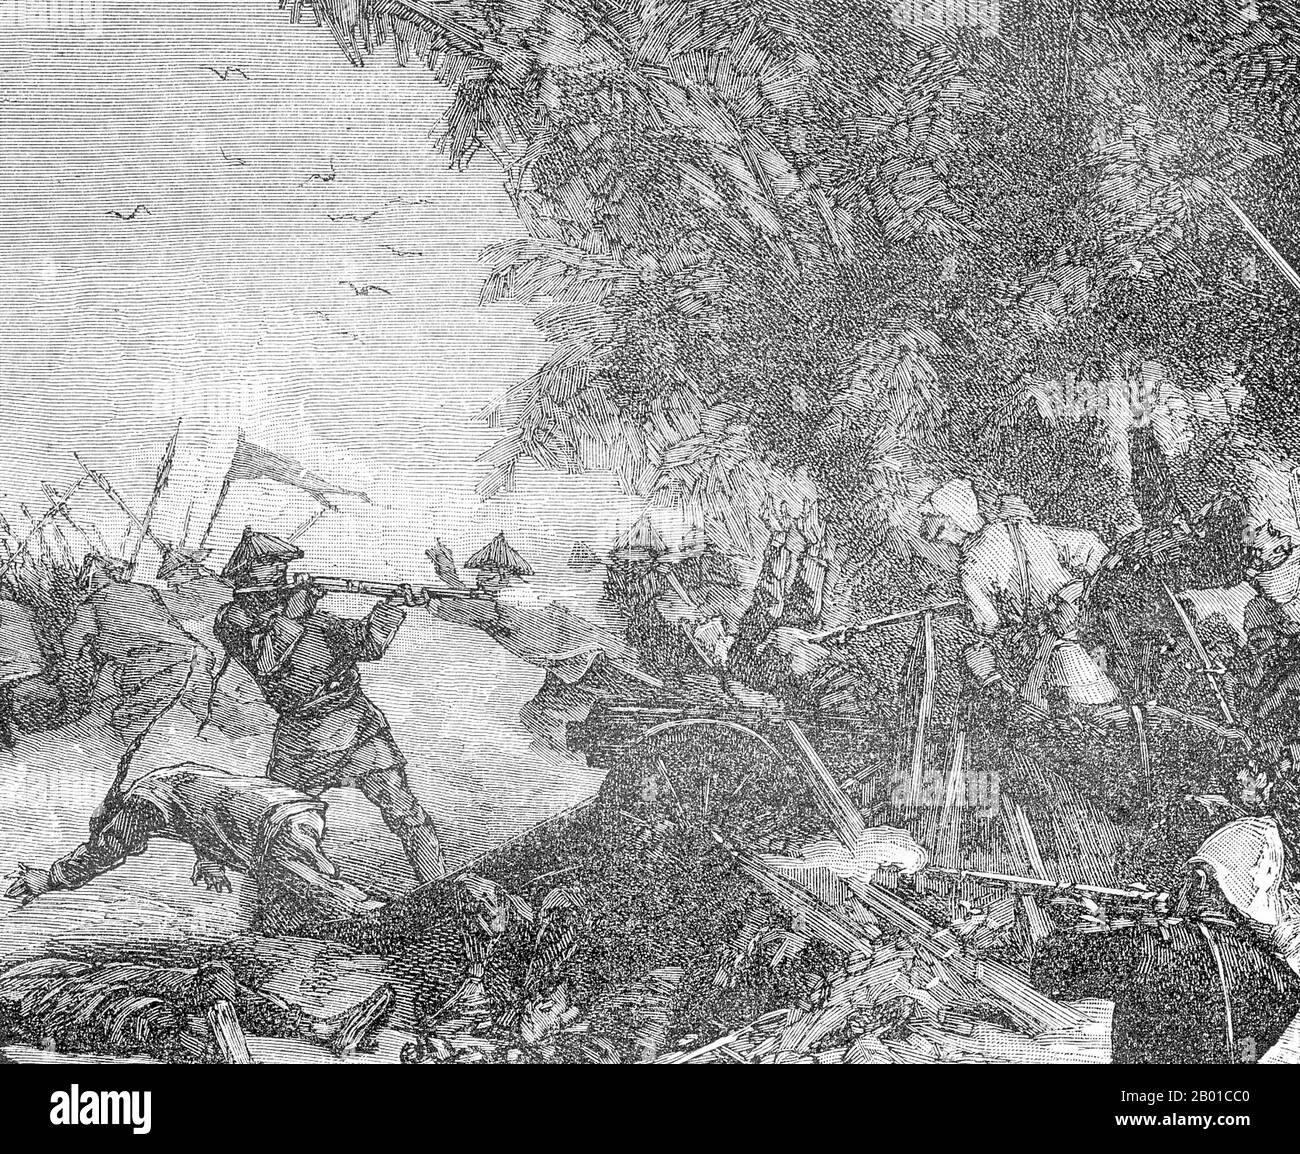 Vietnam: La fanteria francese cattura un forte cinese durante la battaglia di Nui Bop, 4 gennaio 1885. Incisione di Charles-Lucien Huard (12 febbraio 1837 - 22 gennaio 1899), 1887. La campagna Tonkin (in francese Campagne du Tonkin) fu un conflitto armato combattuto tra giugno 1883 e aprile 1886 dai francesi contro, in vario modo, l'esercito vietnamita, la bandiera nera di Liu Yongfu e gli eserciti cinesi Guangxi e Yunnan per occupare Tonkin (Vietnam settentrionale) e radicarci un protettorato francese. Foto Stock